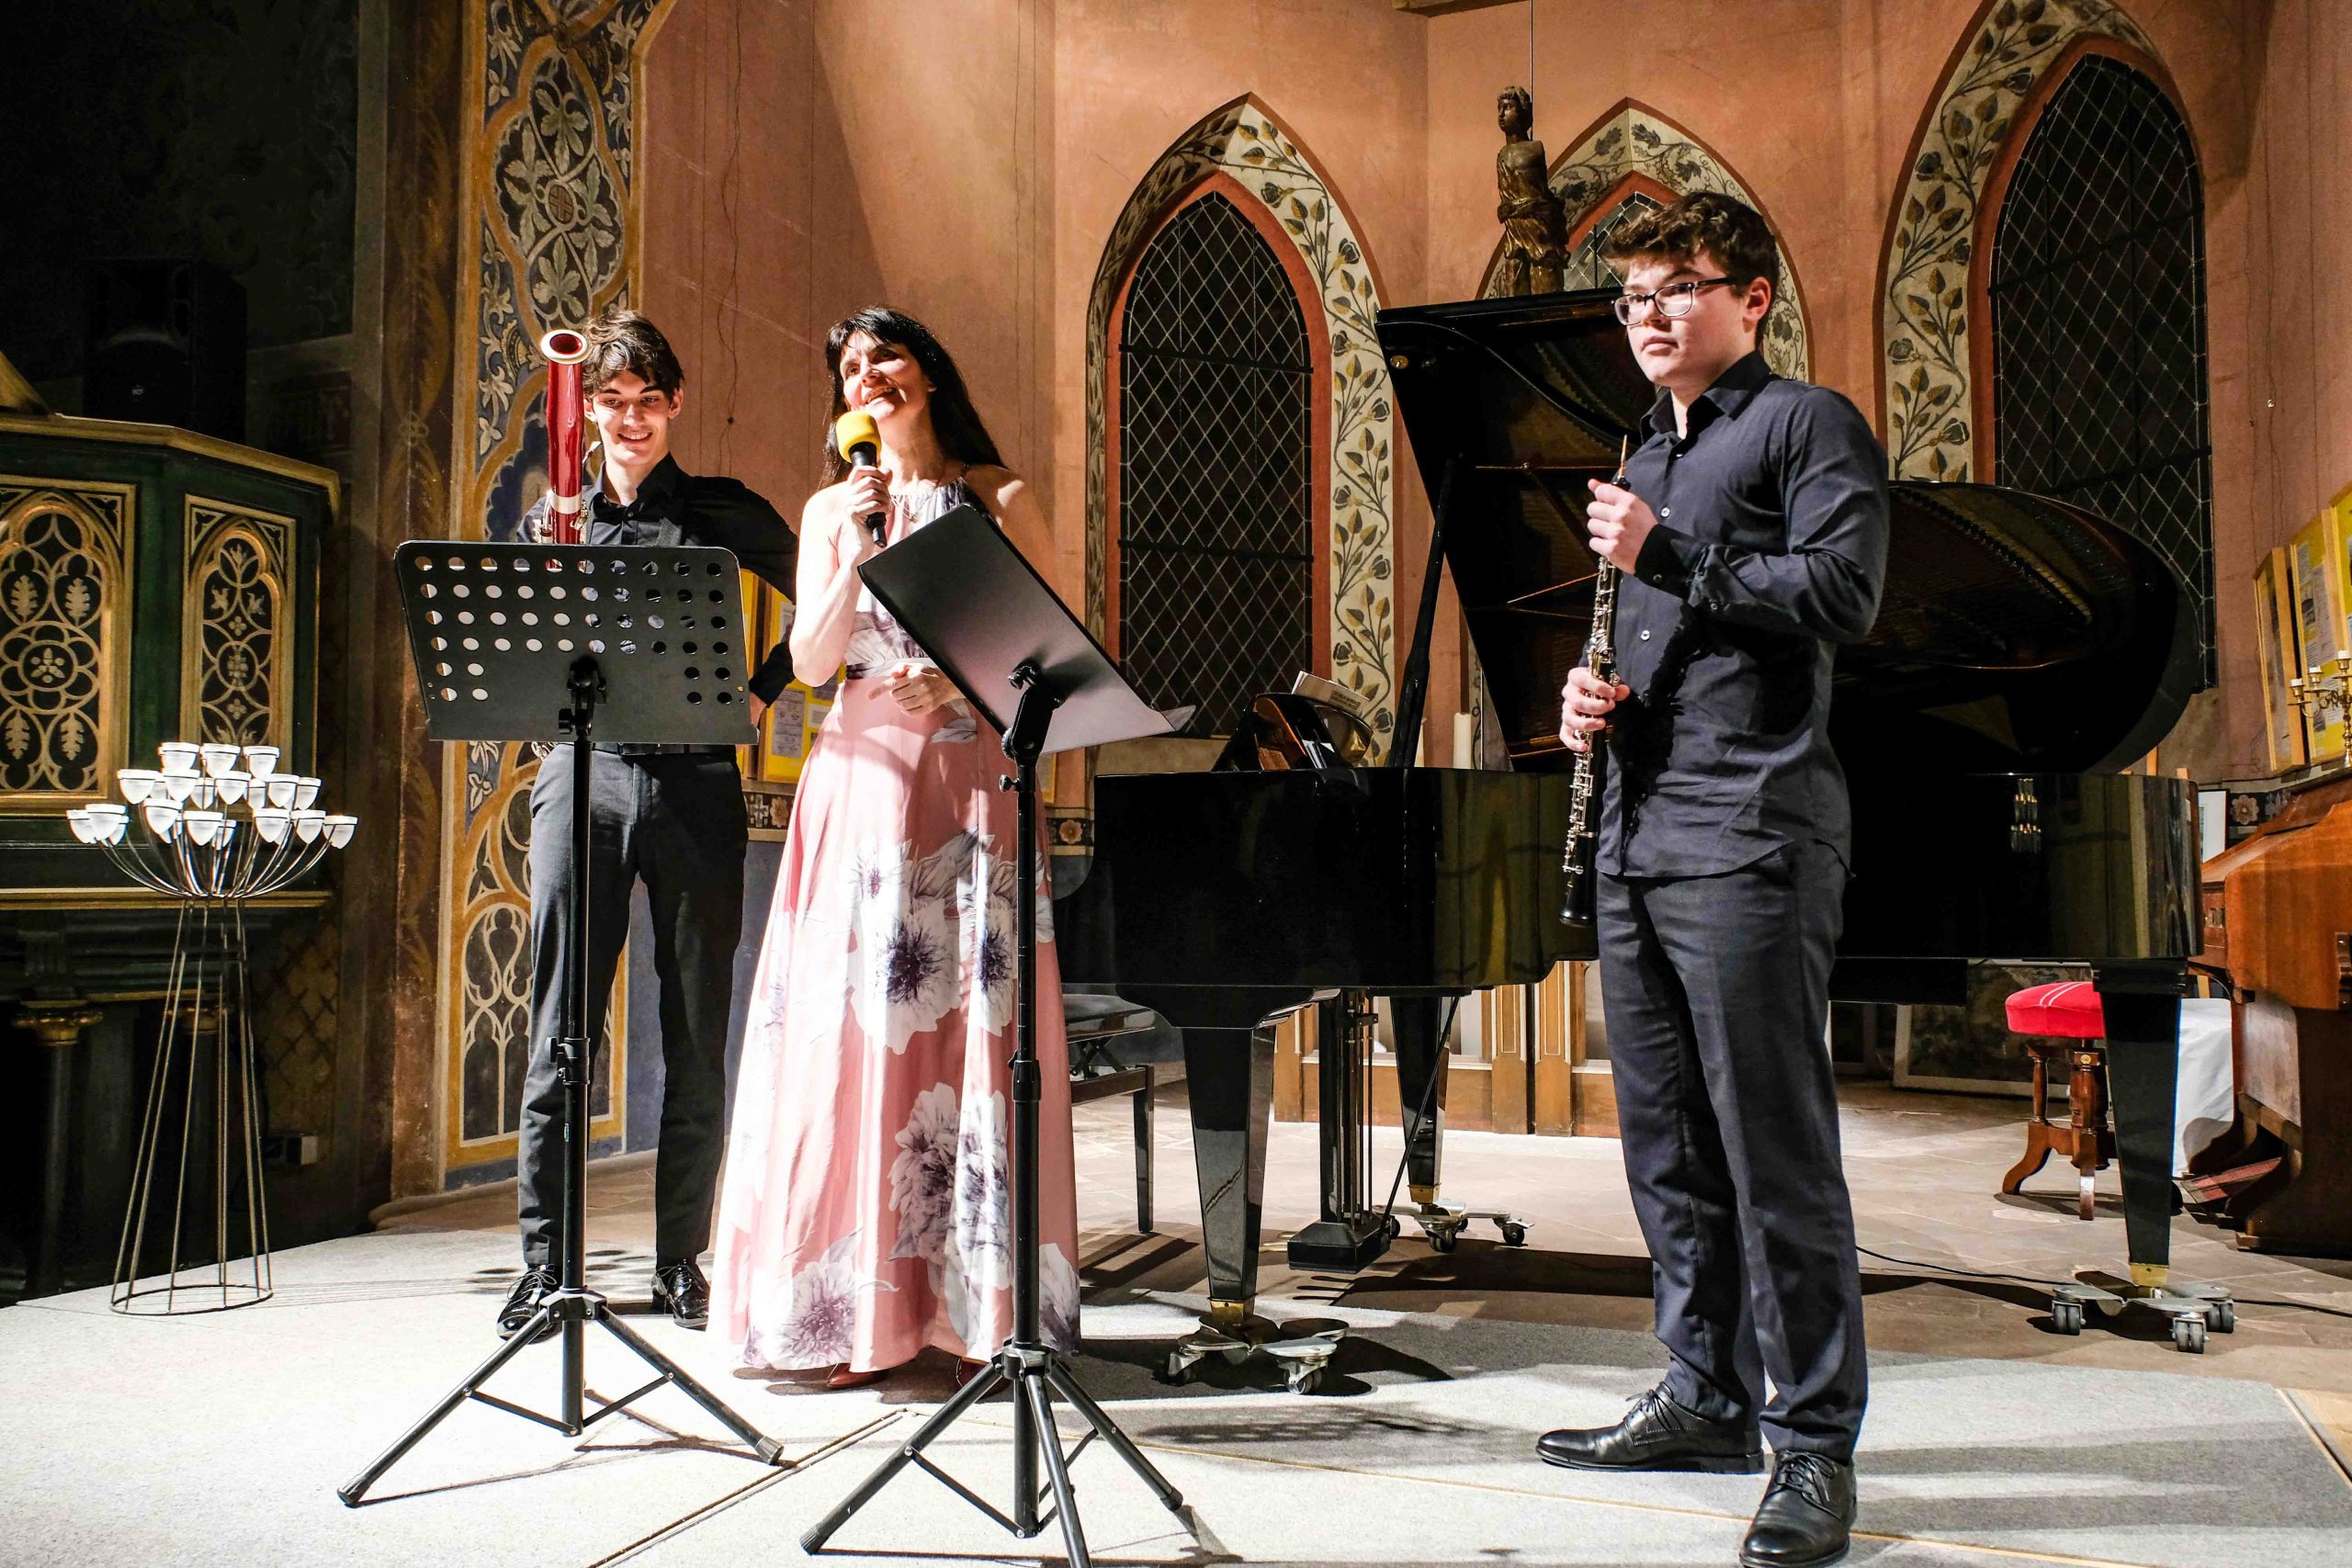 Kultur in der Patronatskirche – Elisaveta Blumina stellt junge Spitzenmusiker vor